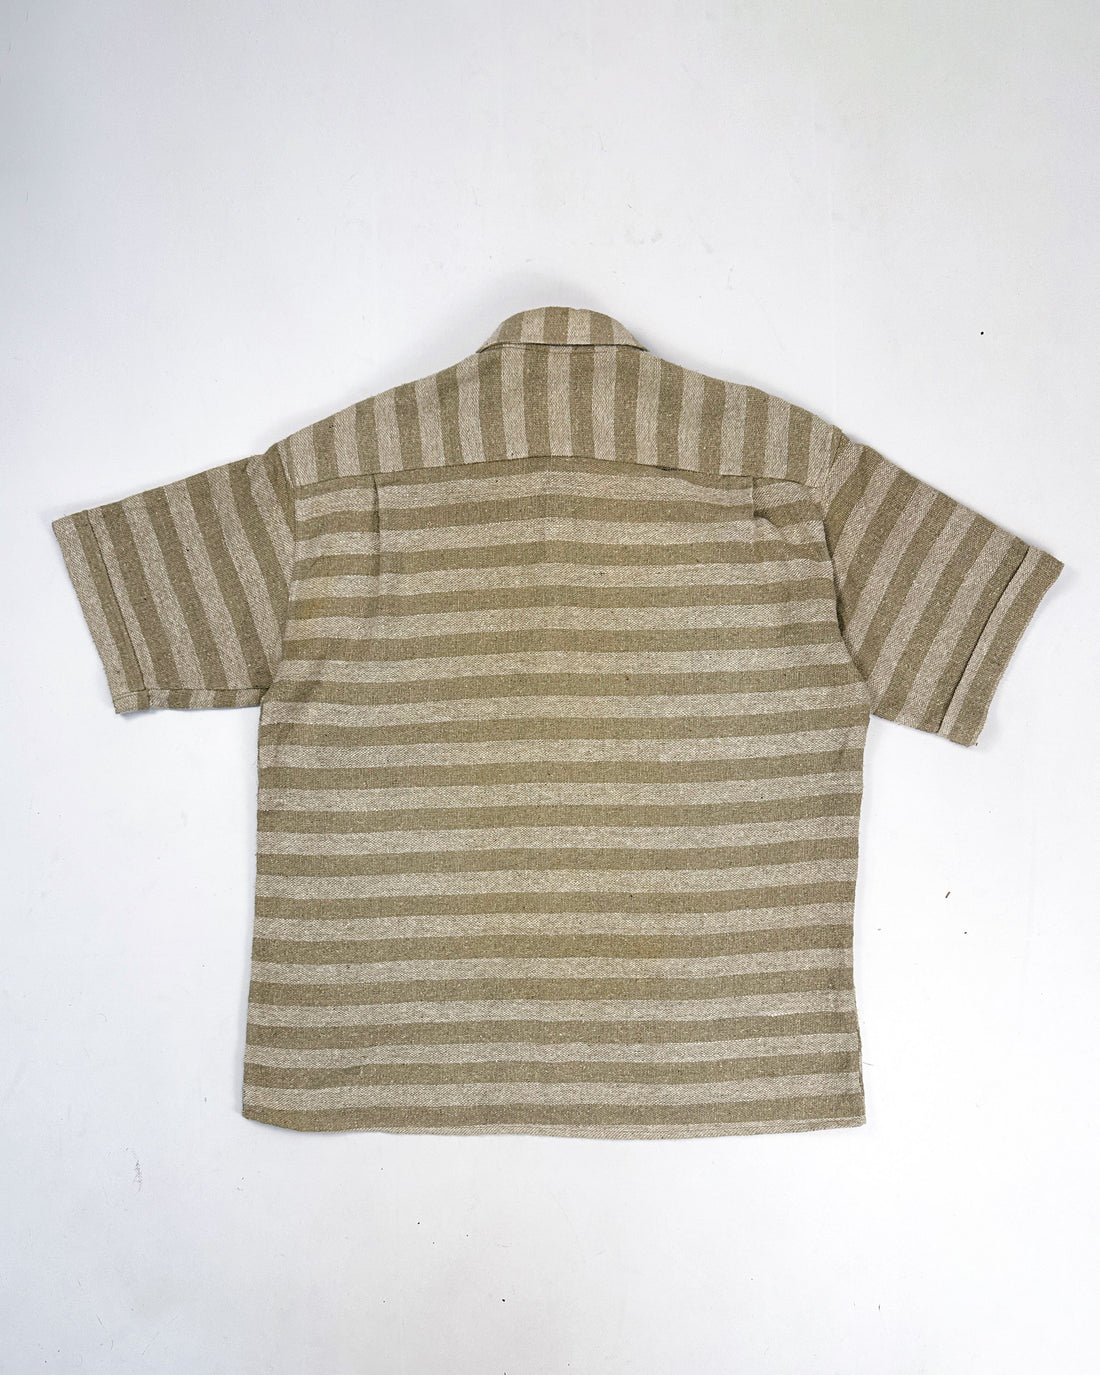 Polo Ralph Lauren Hemp Cotton Made in USA Shirt 1990's